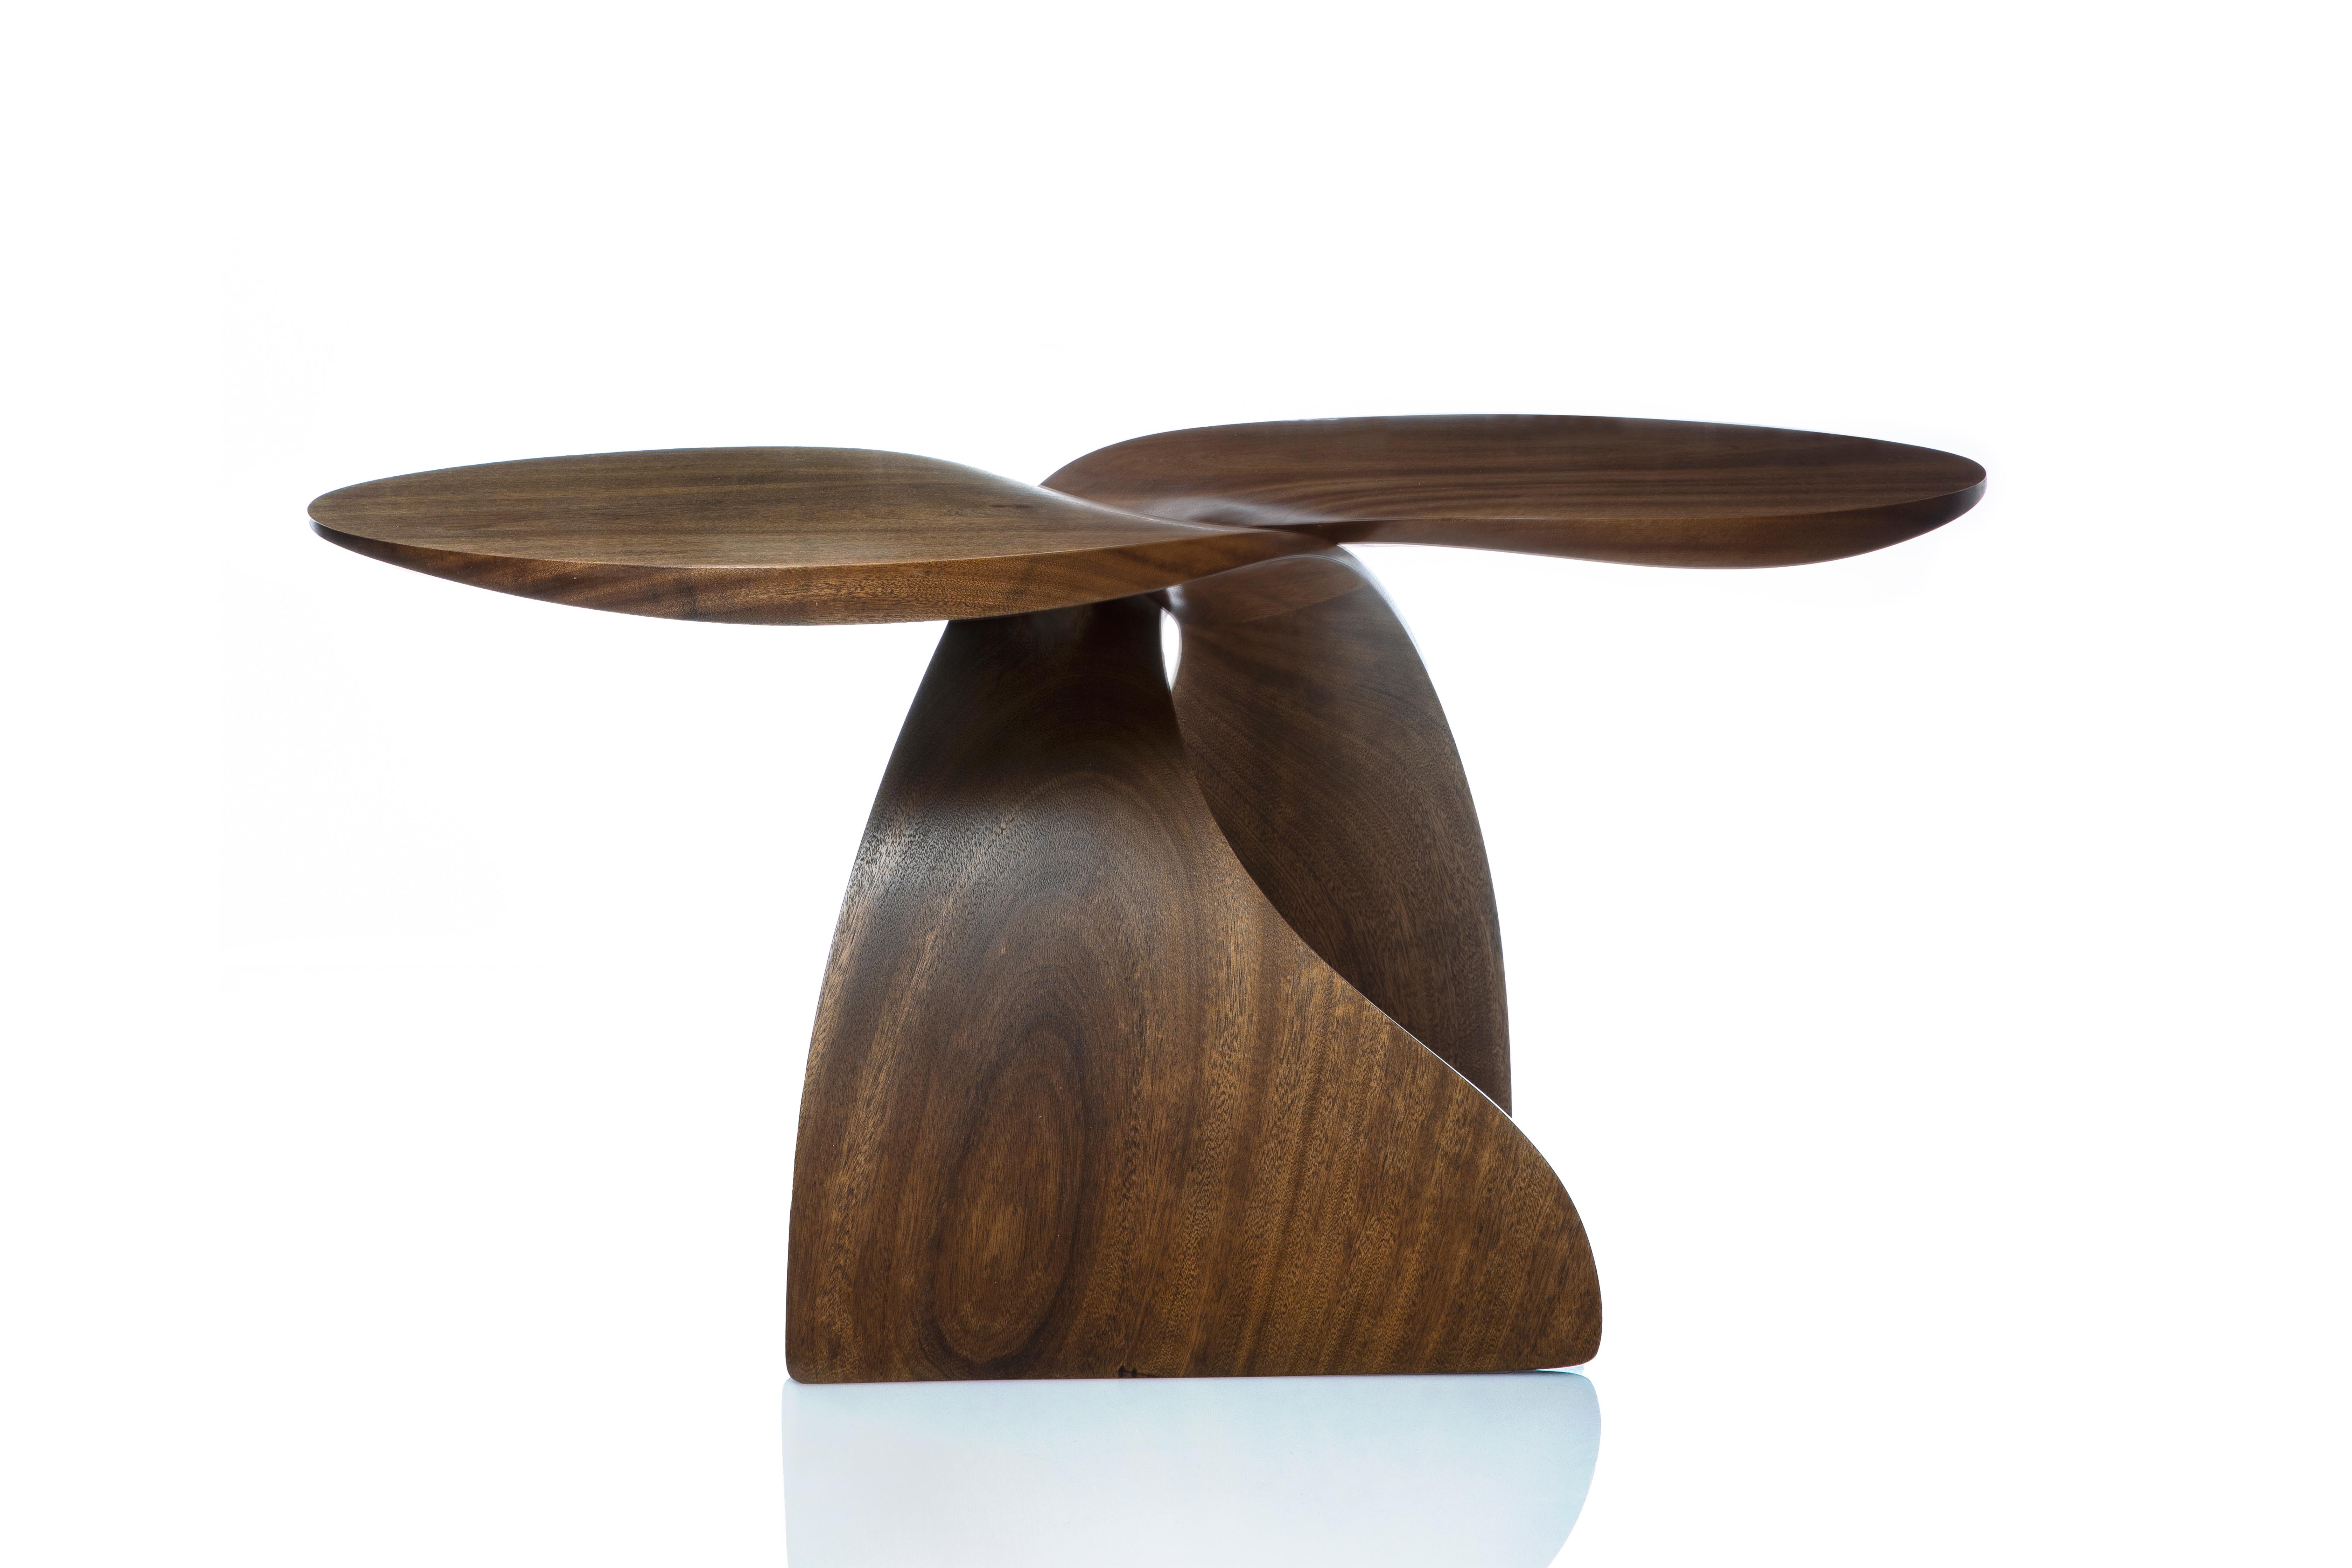 Dieser zeitgenössische Tisch verbindet die klar organische Form der handgeschnitzten, geschwungenen Basiselemente mit der modernen, geometrischen Form der Platten. Es besteht aus zwei identischen Schnitzereien aus Sapelaholz und hat einen